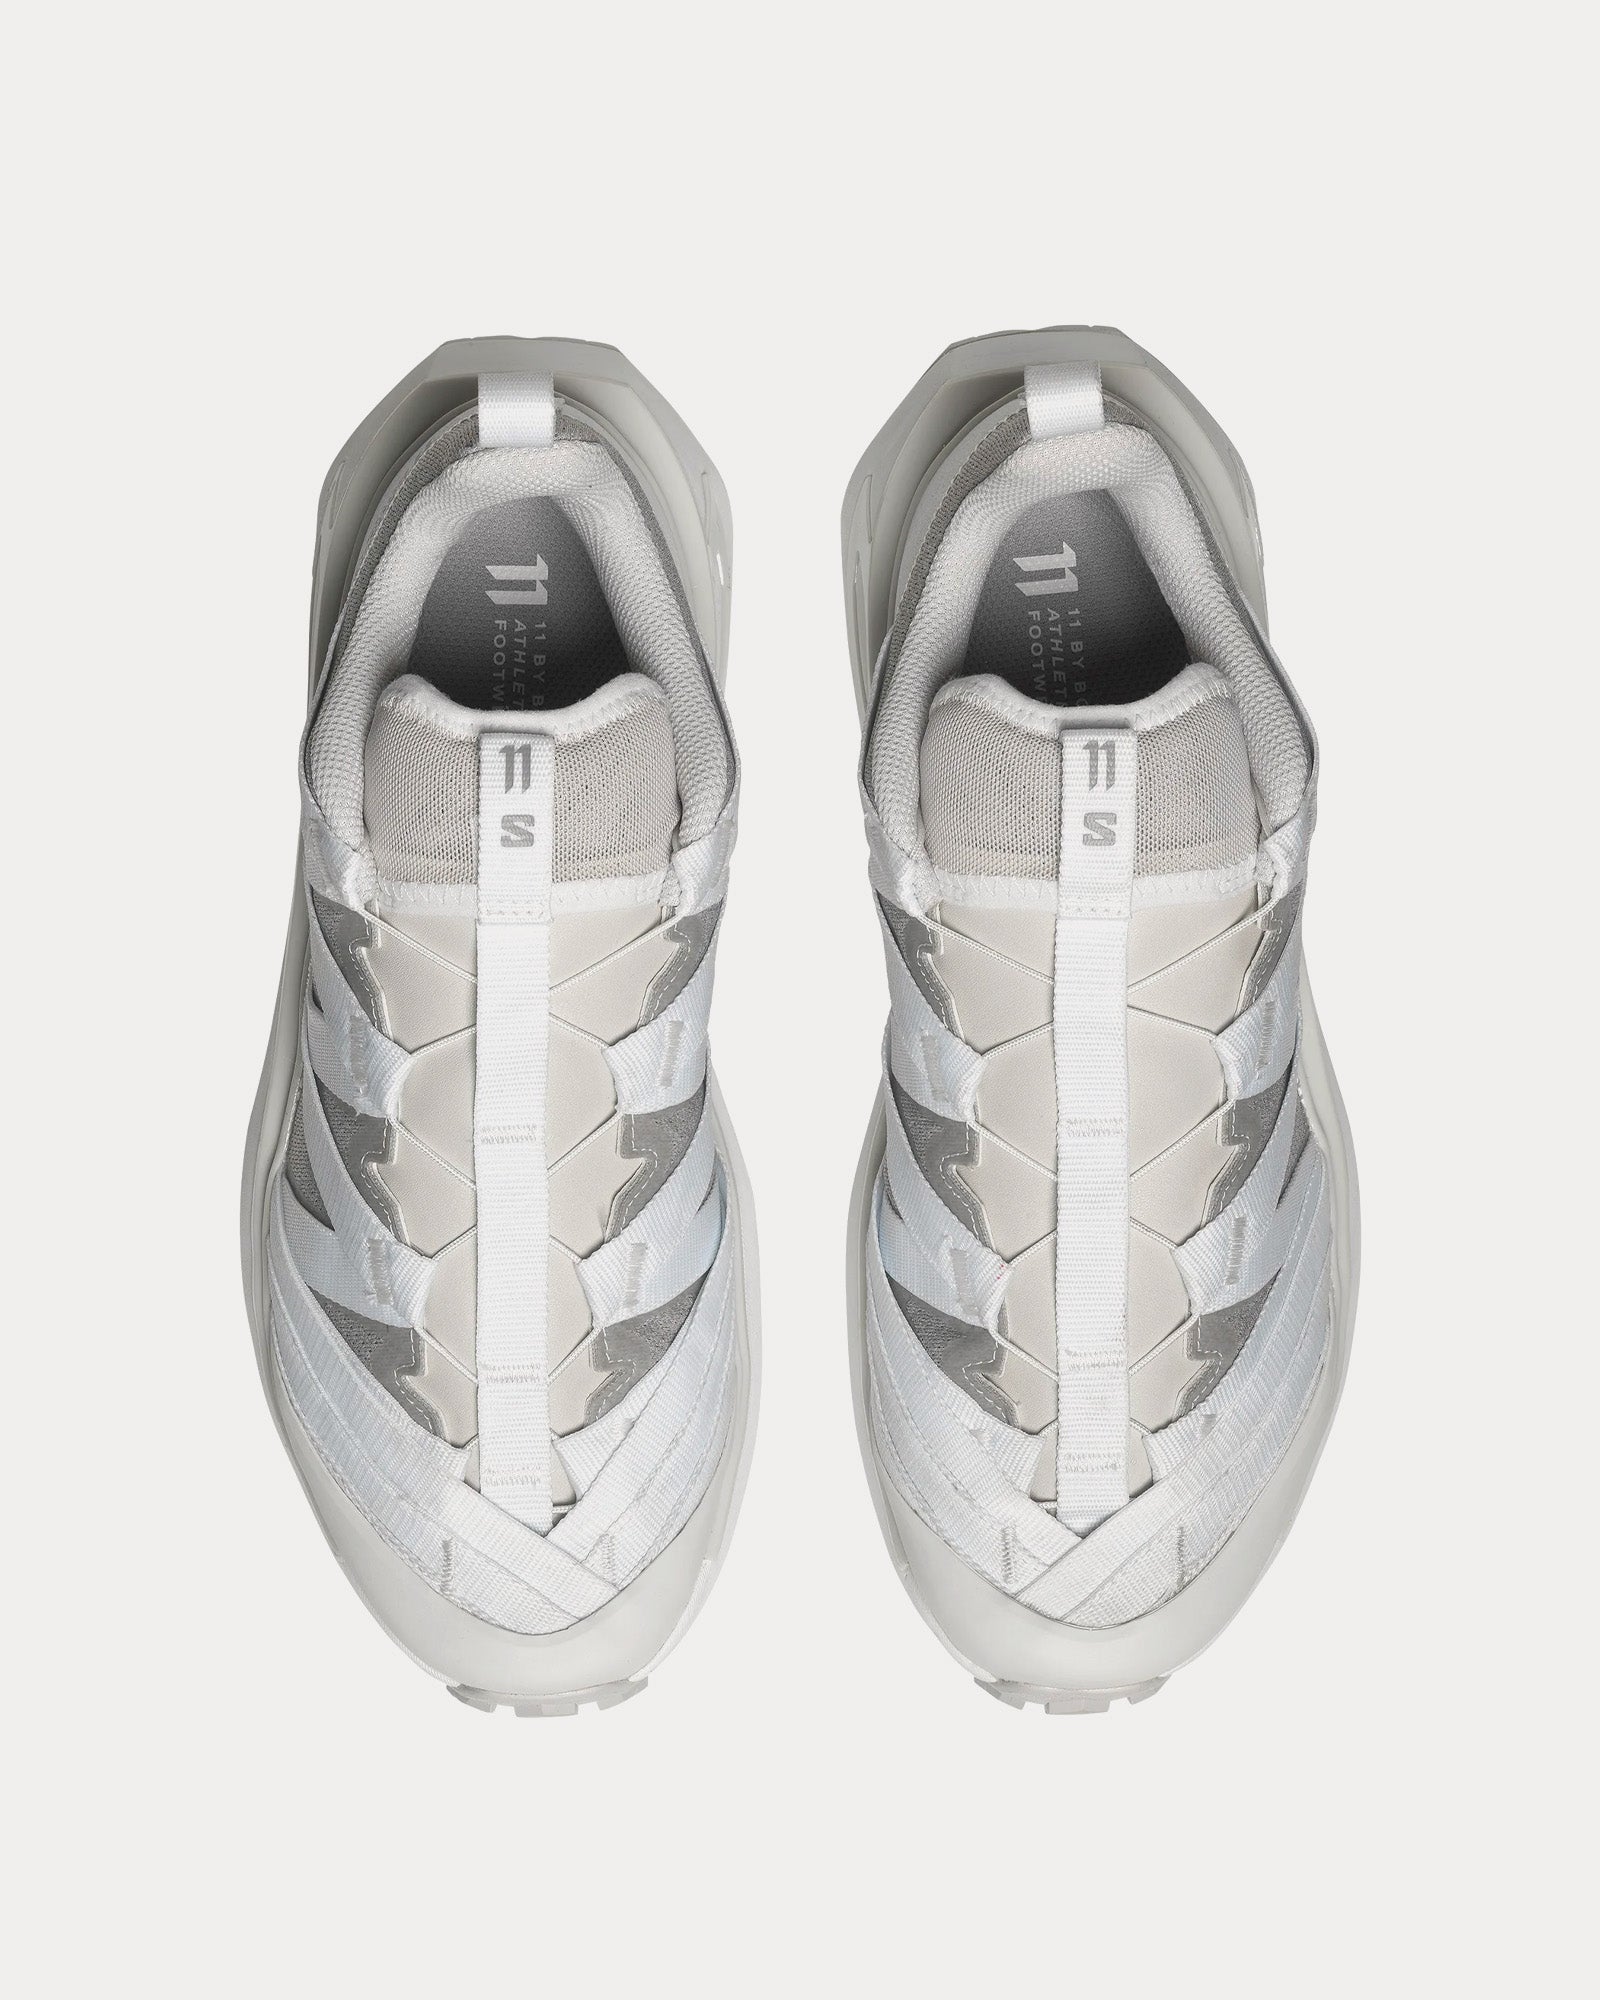 Salomon x 11 By Boris Bidjan Saberi - 11s Footwear A.B.1 White / Lunar Rock / White Low Top Sneakers